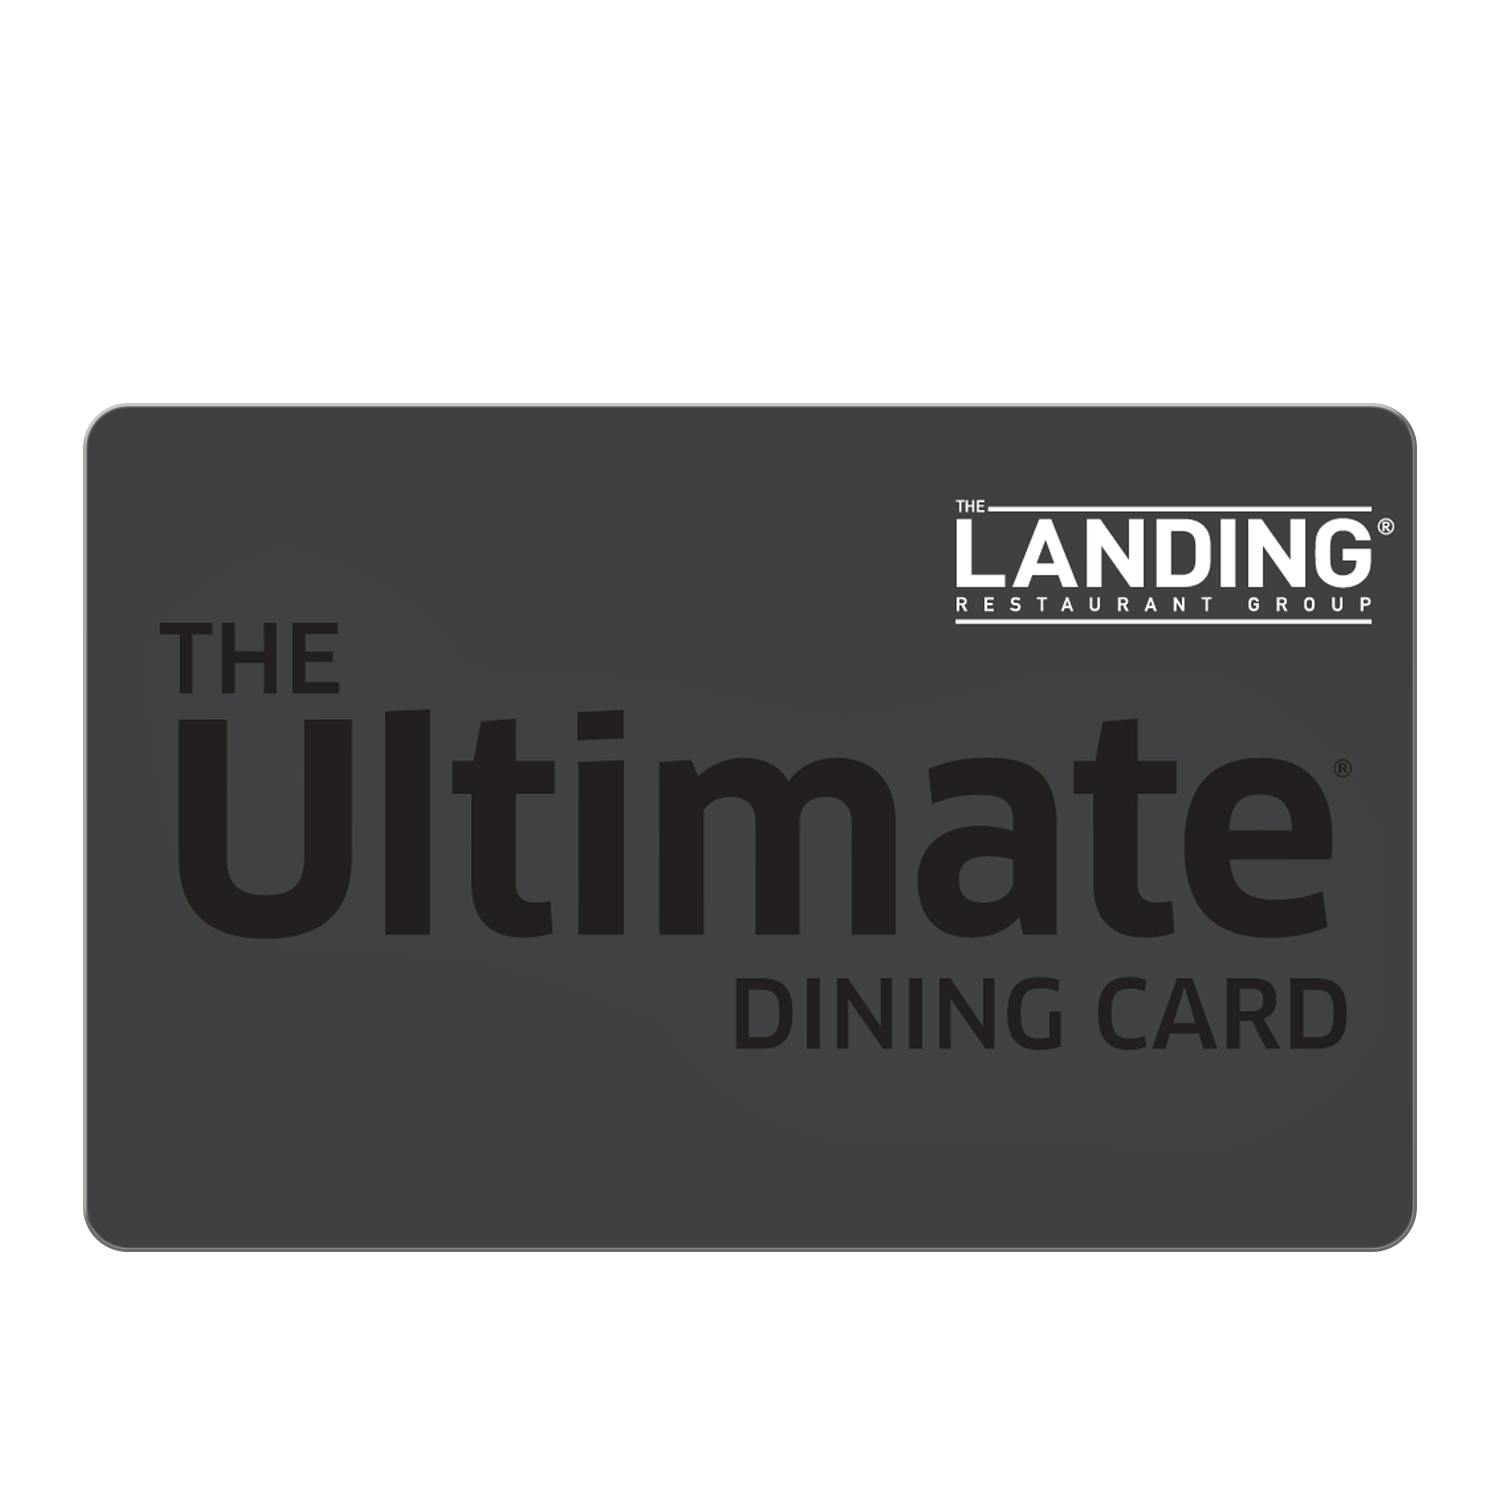 The Landing Restaurant Group CA